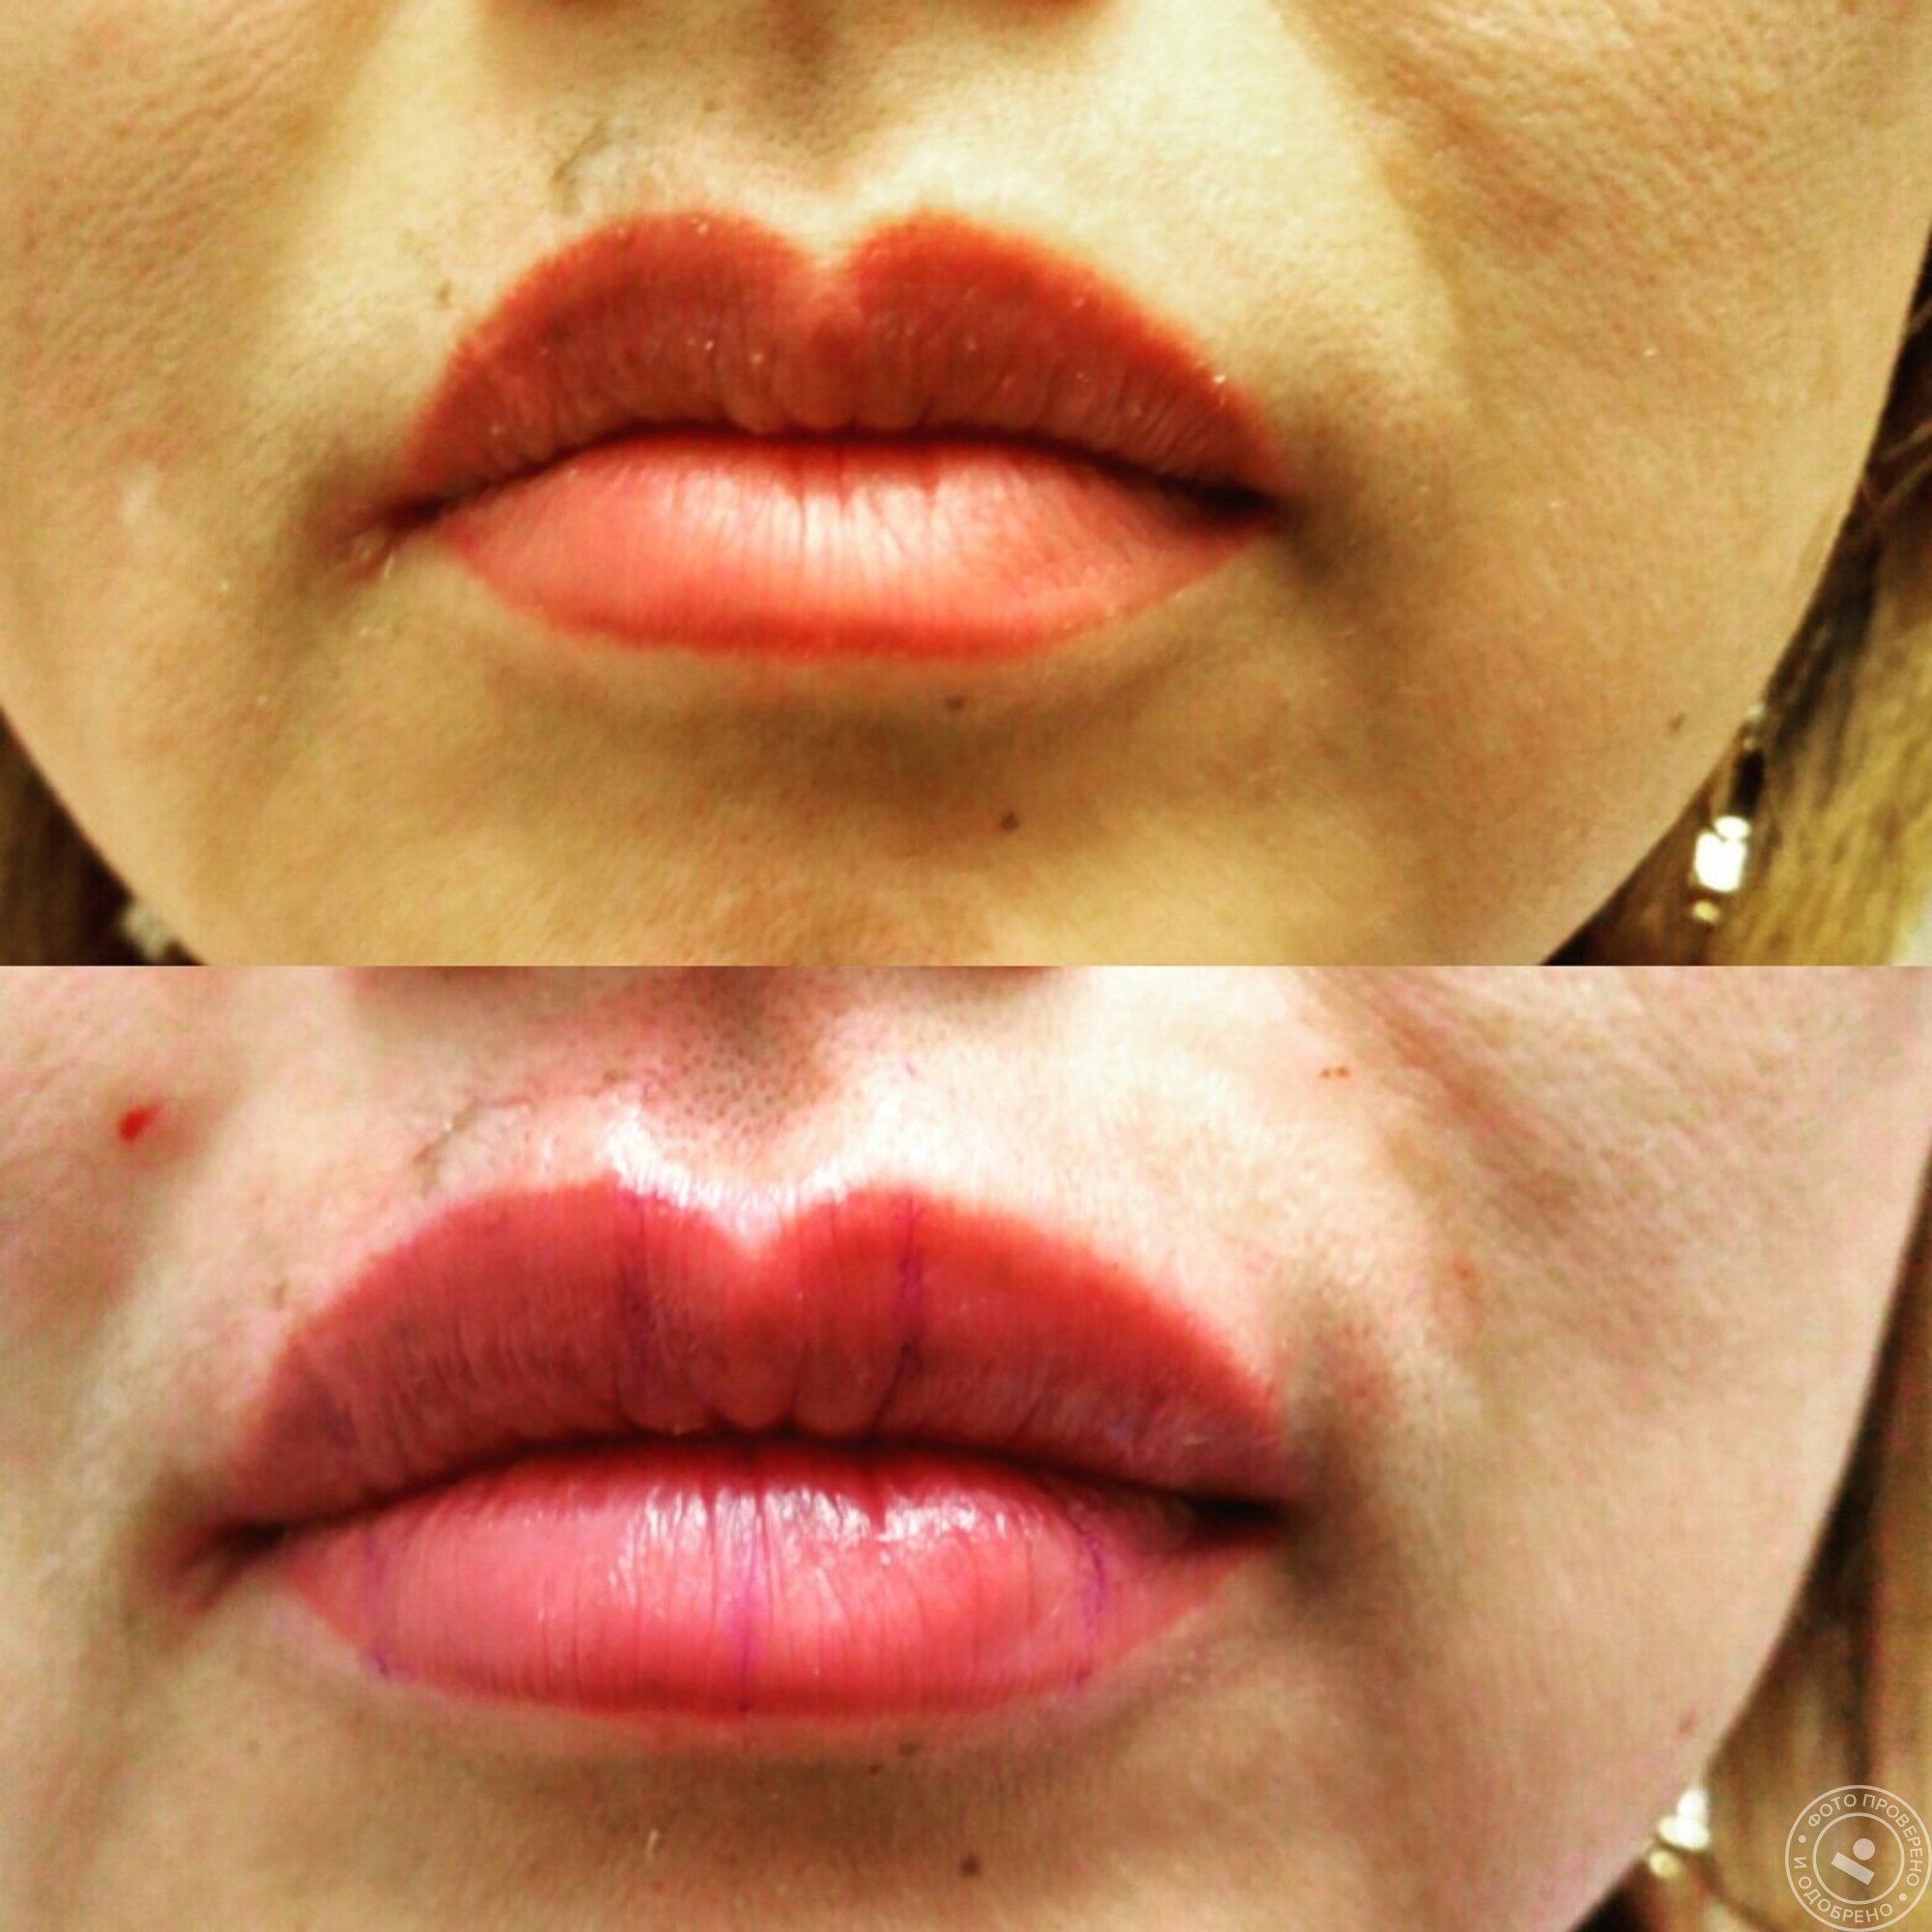 Татуаж или увеличение губ